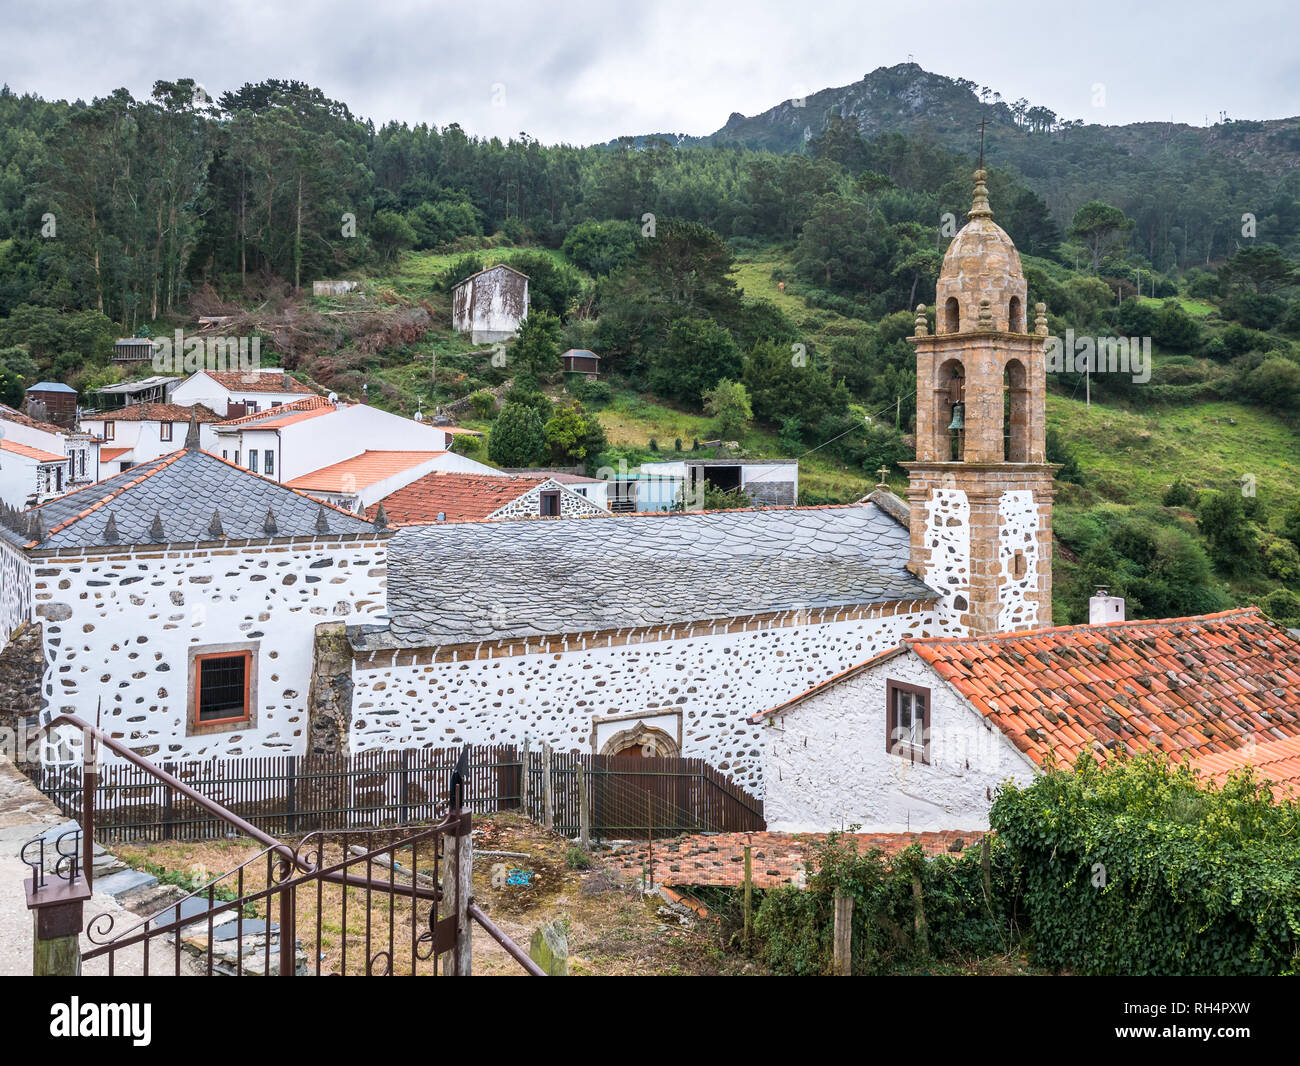 Church of San Andres de Teixido, near Cedeira, Rias Altas, Galicia, Spain Stock Photo